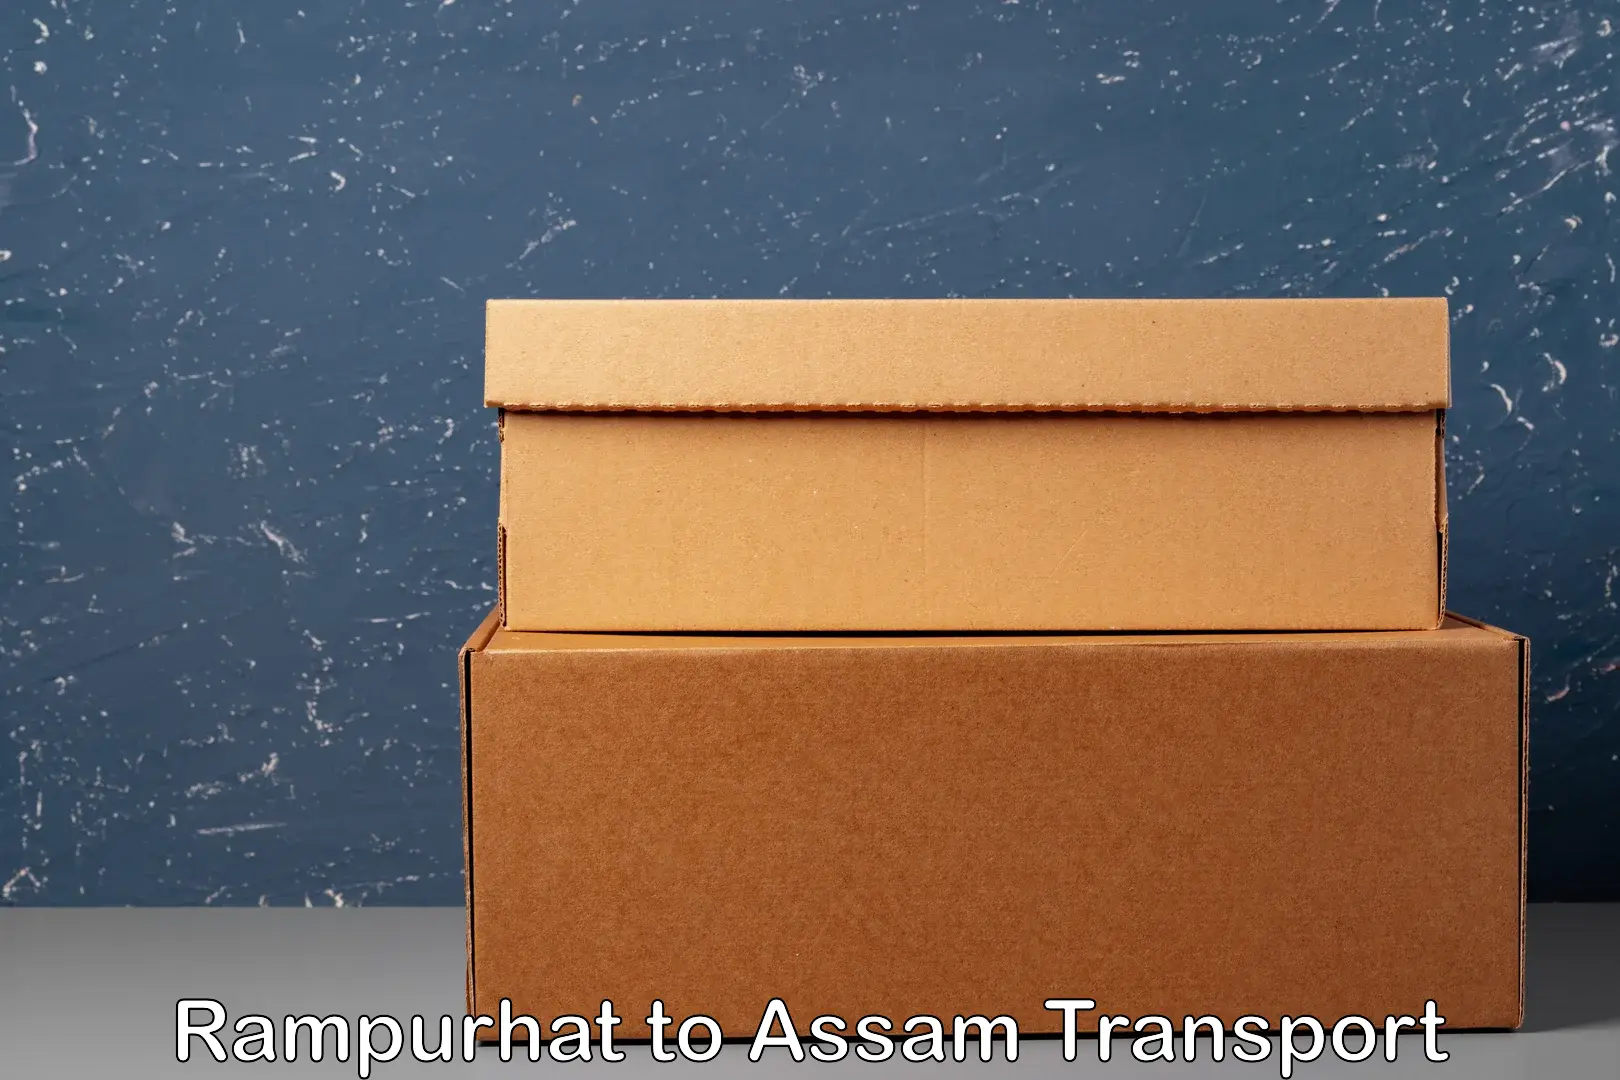 Online transport booking Rampurhat to Biswanath